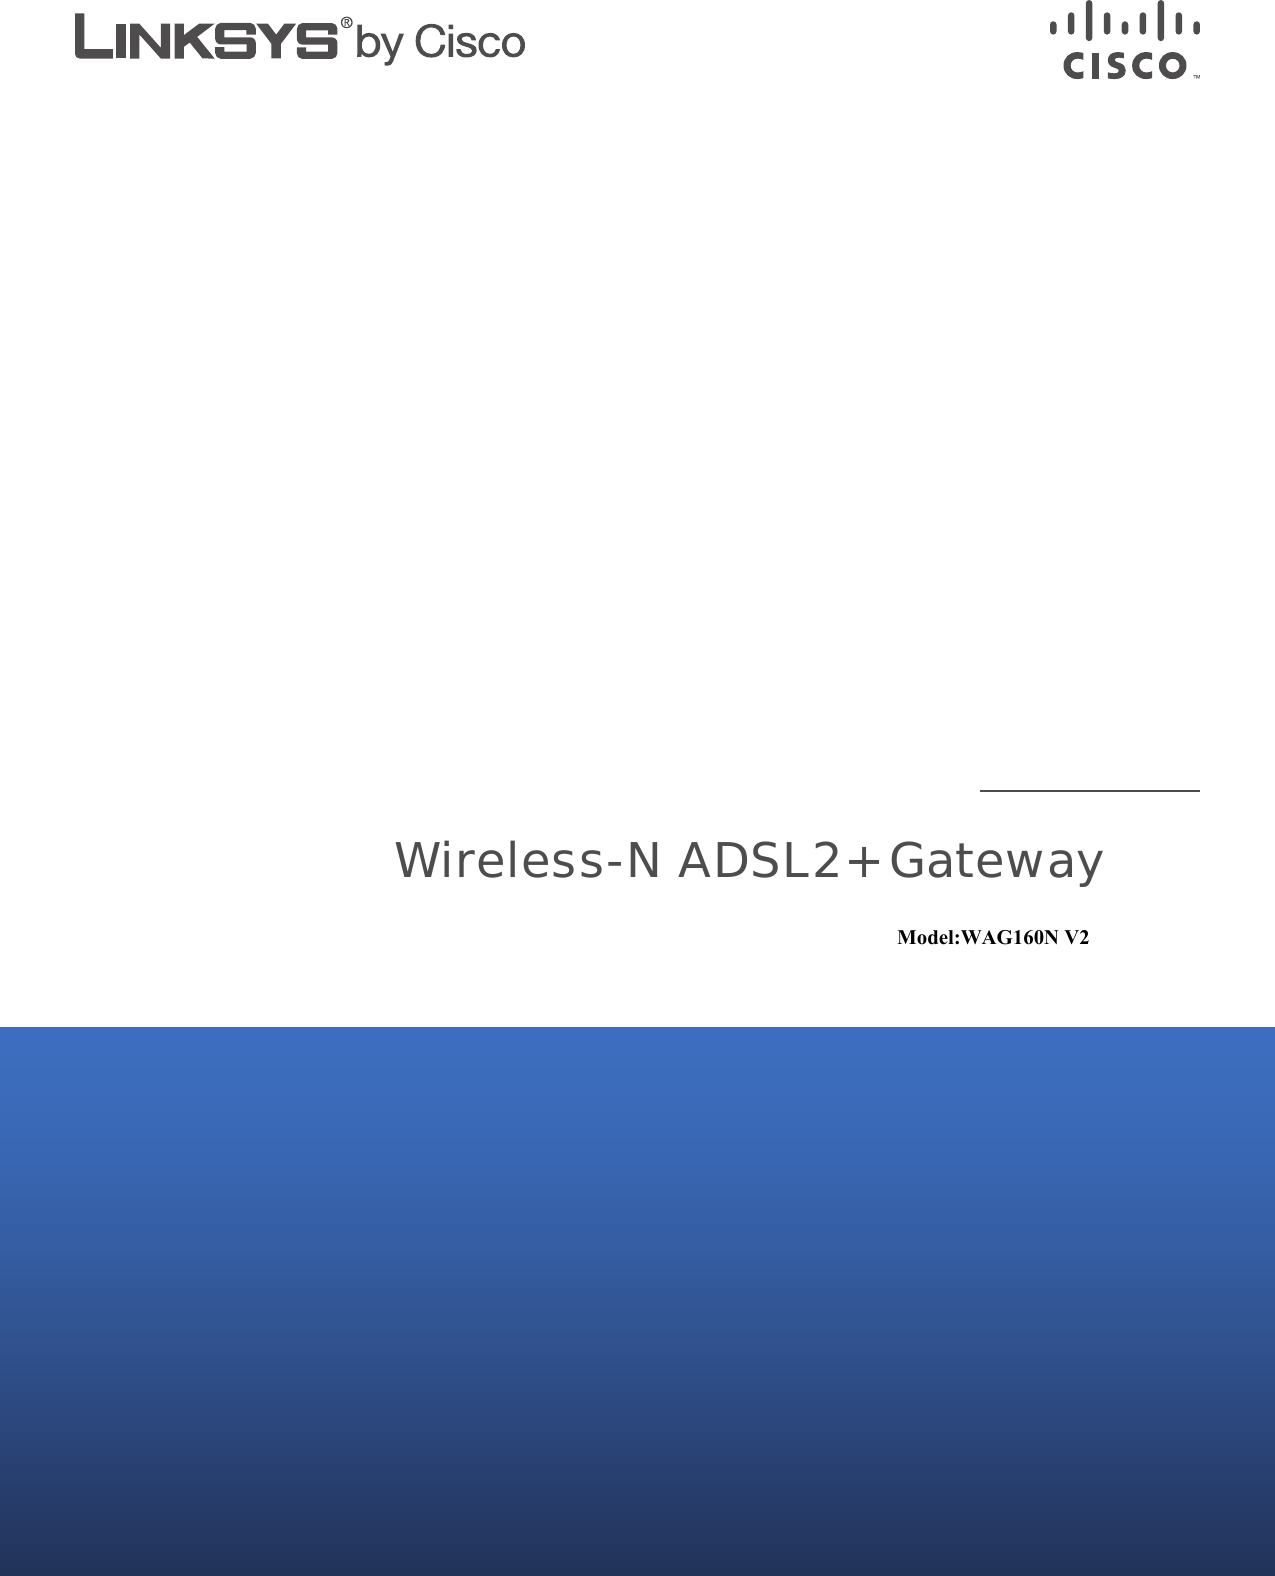 Wireless-N ADSL2+ GatewayModel:WAG160N V2